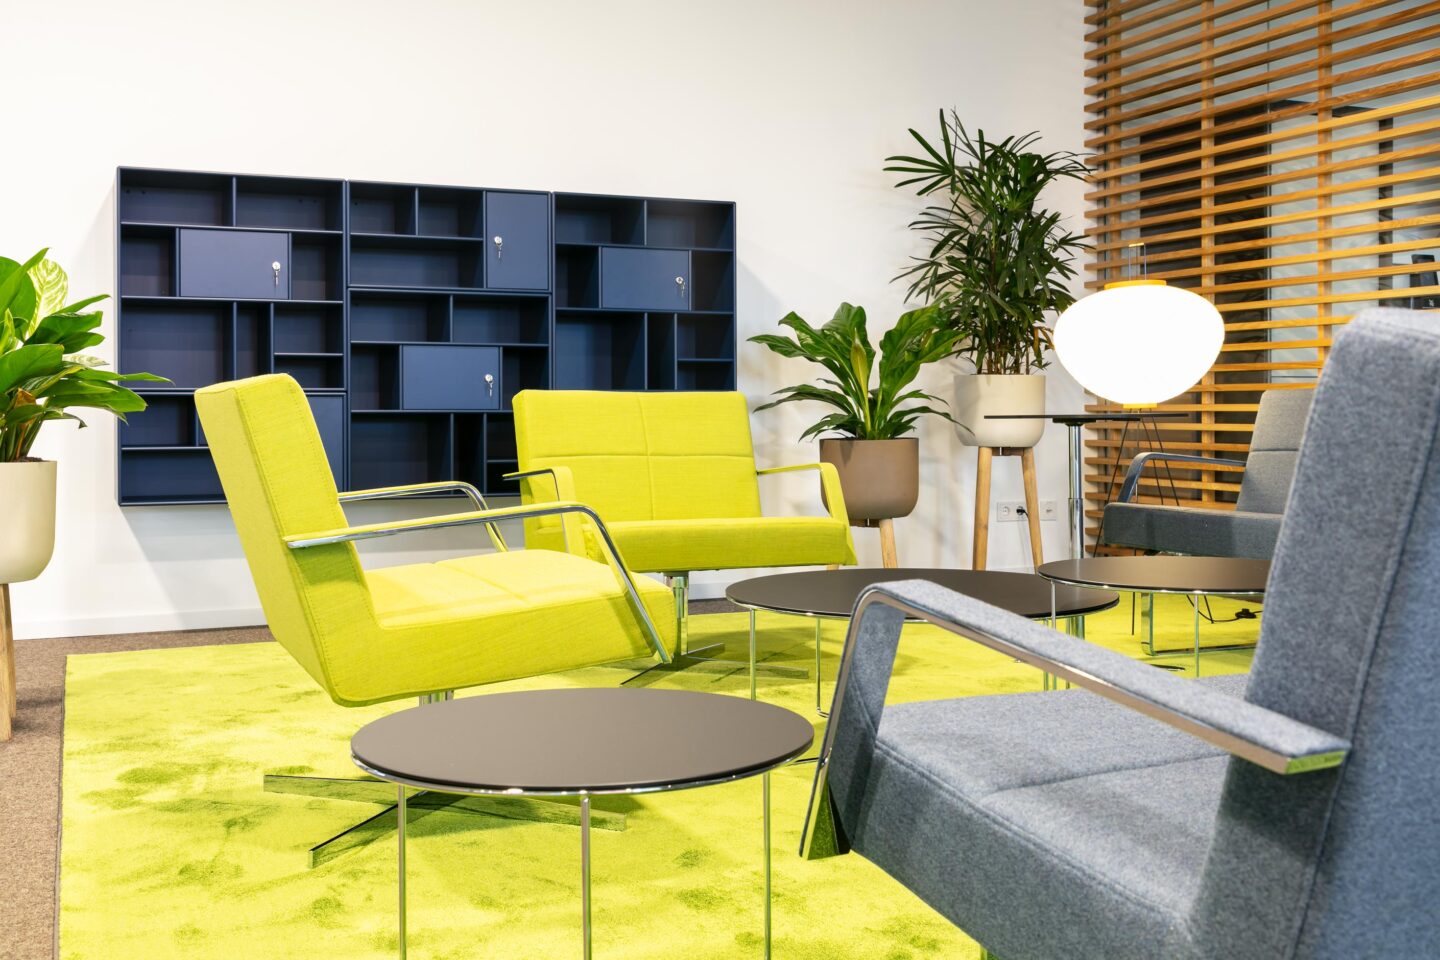 Nussbaum Medien Ettlingen │ office furniture from Vitra, Brunner & Werner Works │ Lounge-Bereich